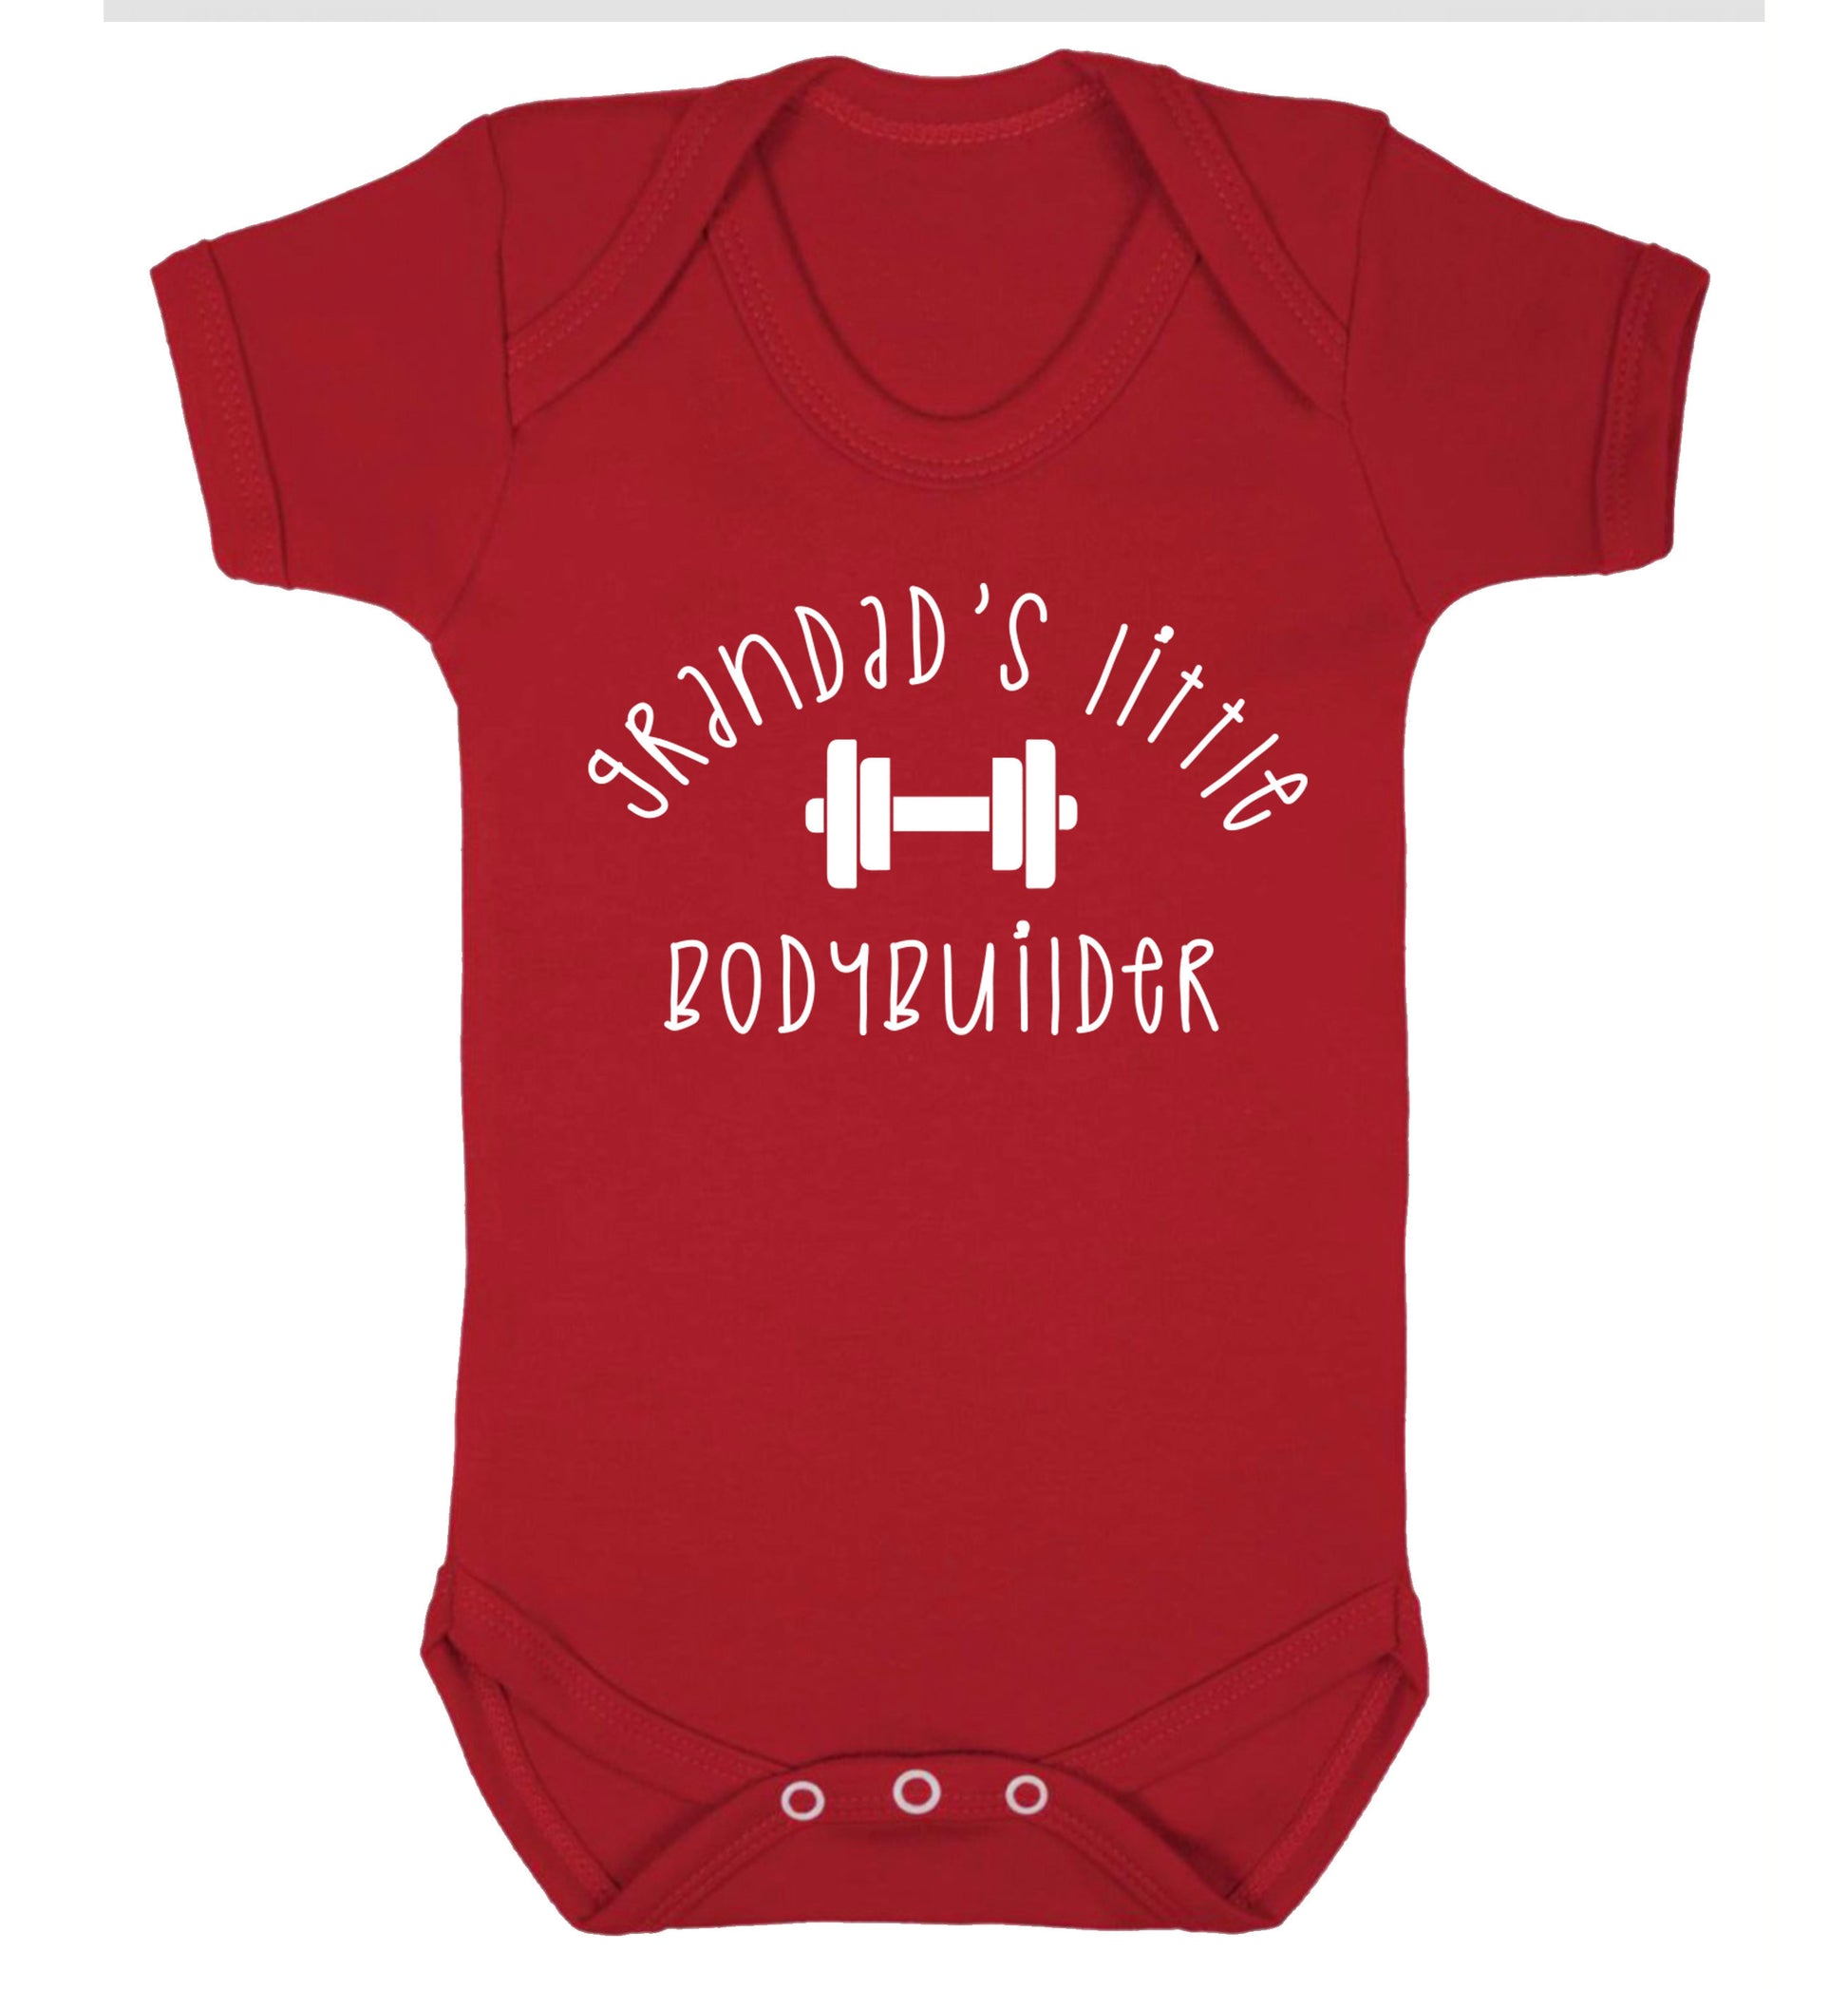 Grandad's little bodybuilder Baby Vest red 18-24 months